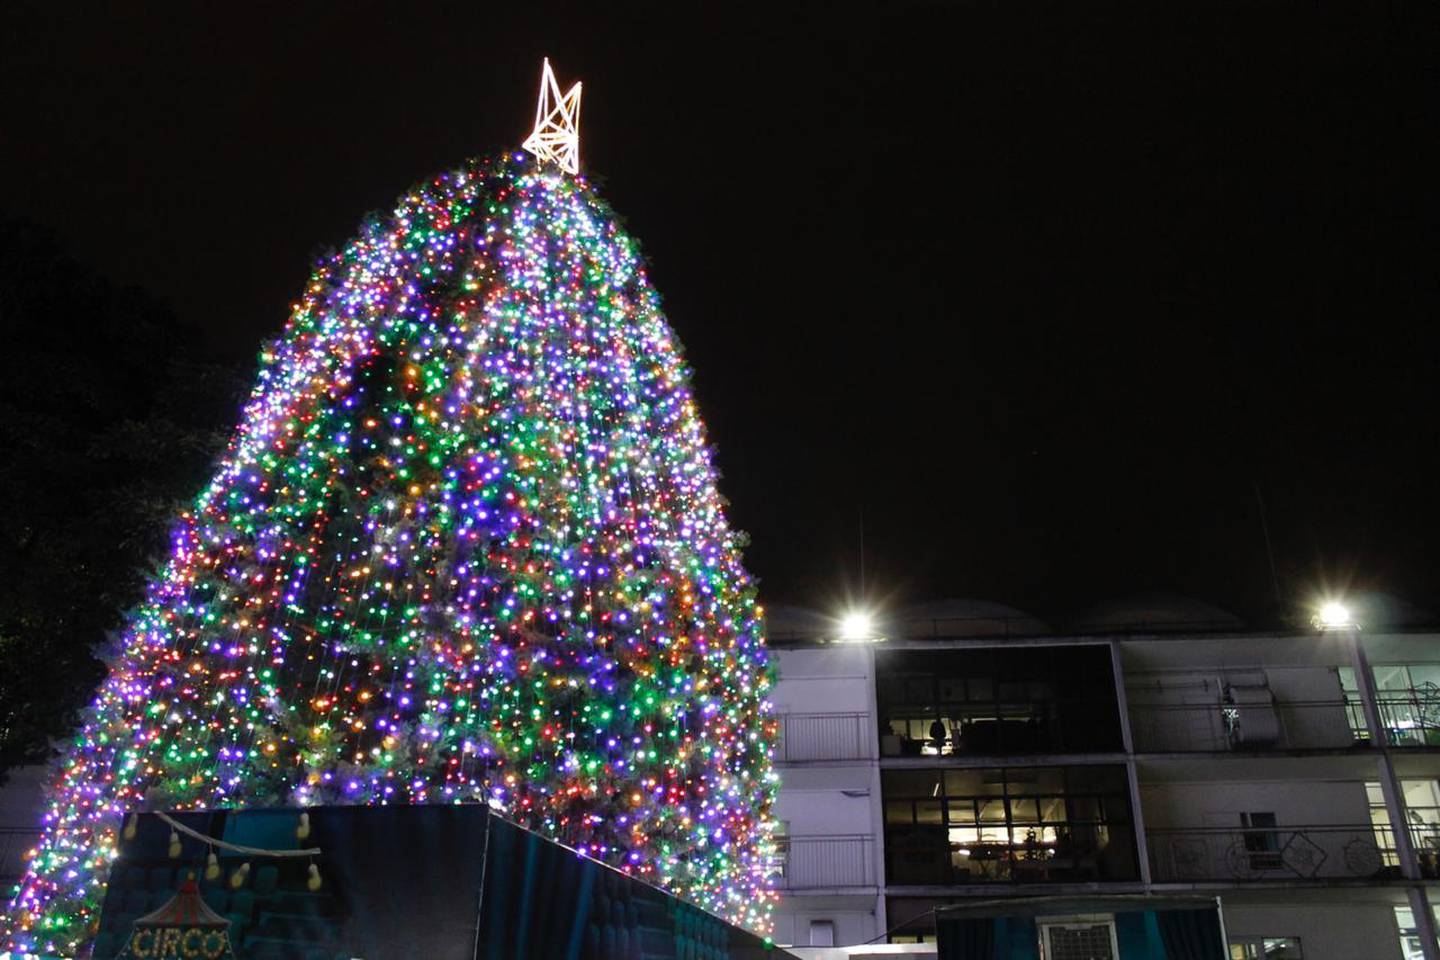 El 3 de diciembre del 2020 el Hospital de Niños realizó la tradicional iluminación del arbolito de navidad